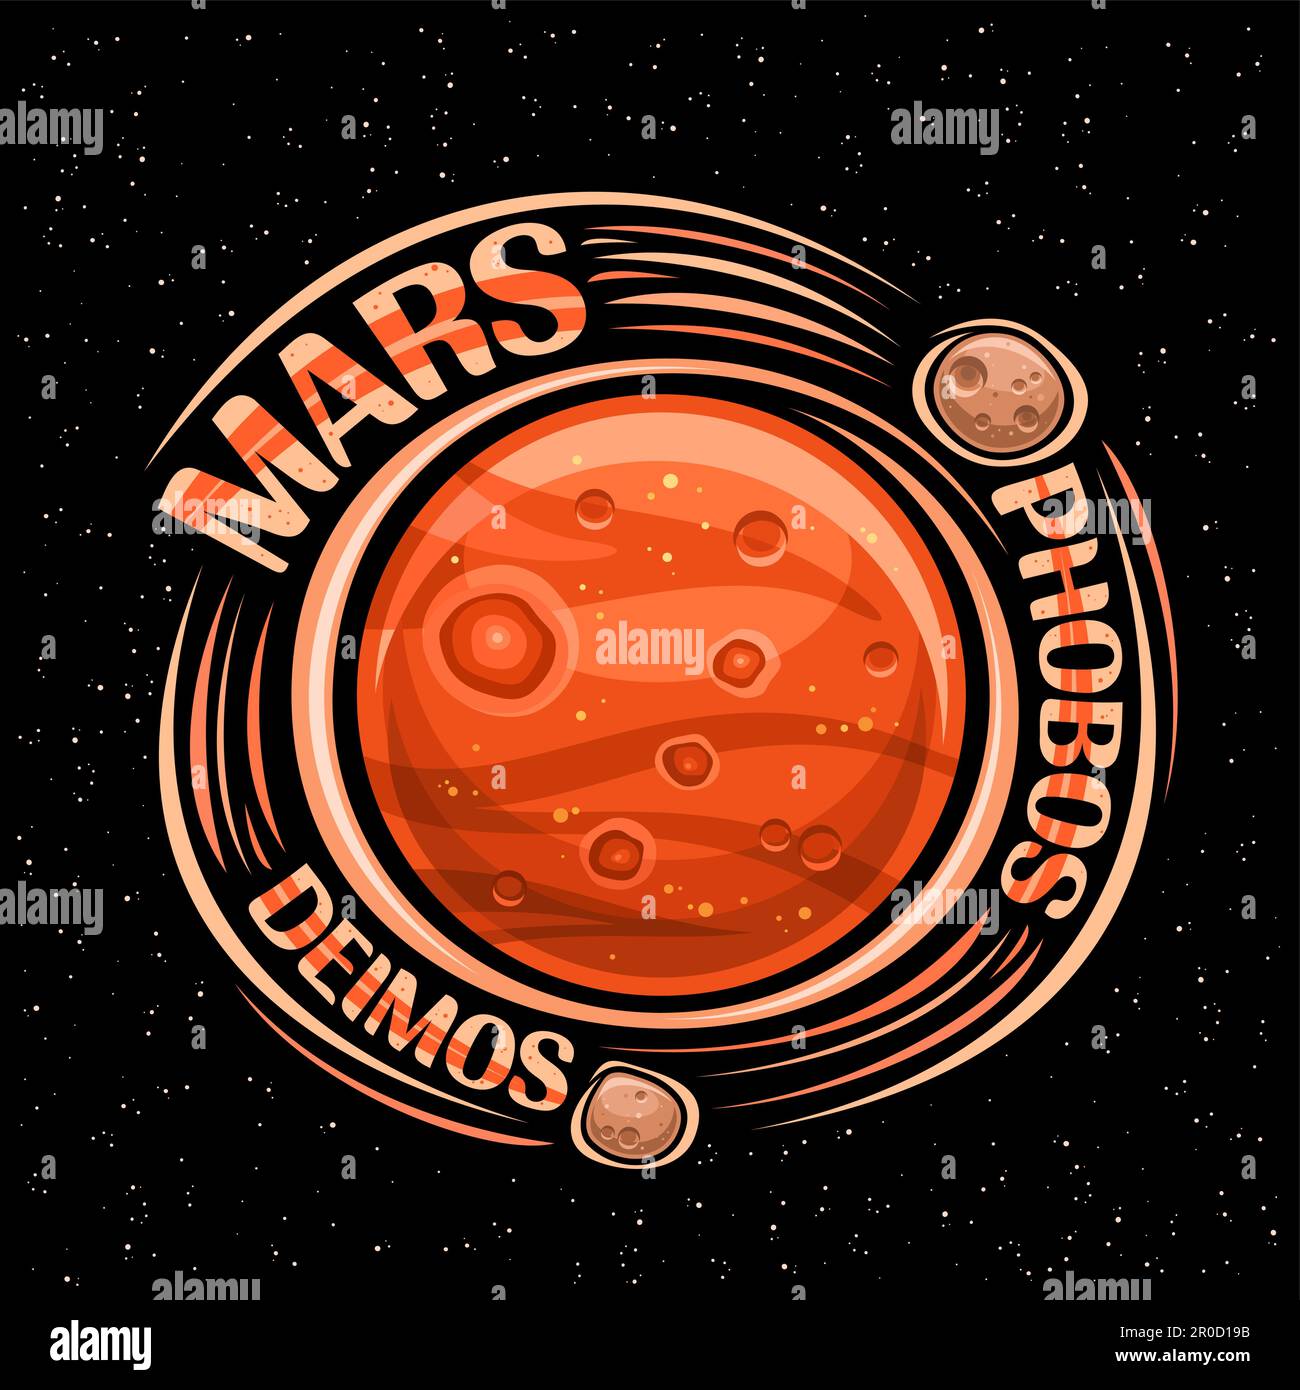 Logo vettoriale per Marte, fantasy stampa cosmo con Marte planetarie con satelliti rotanti, superficie planetaria con crateri e montagne, testo arancione decorativo Illustrazione Vettoriale